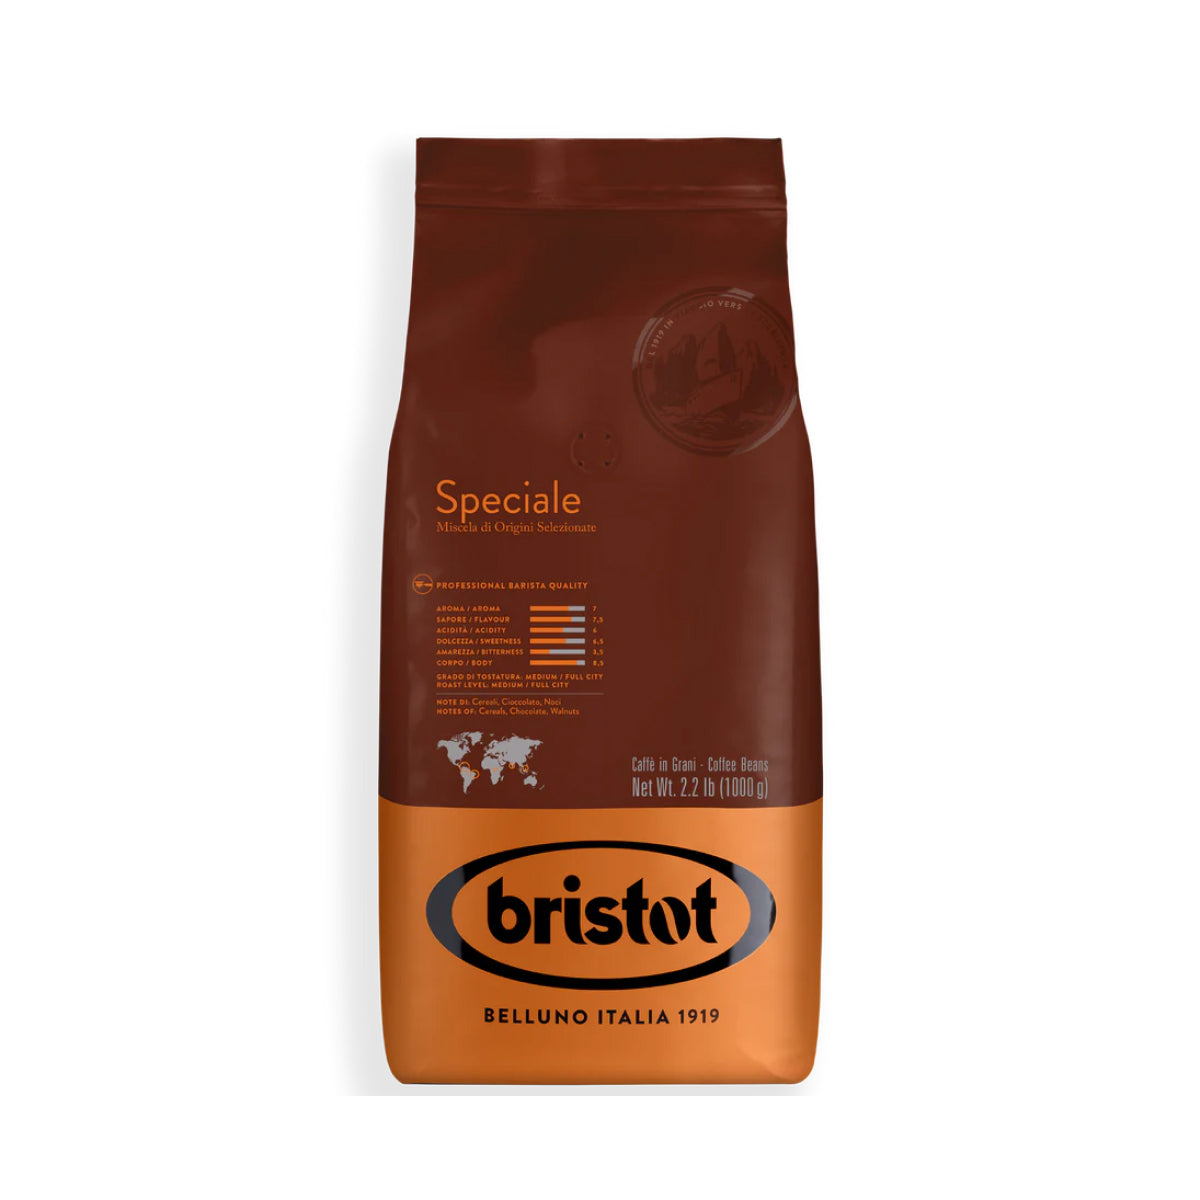 Bristot Speciale Espresso Beans [2.2 lb]